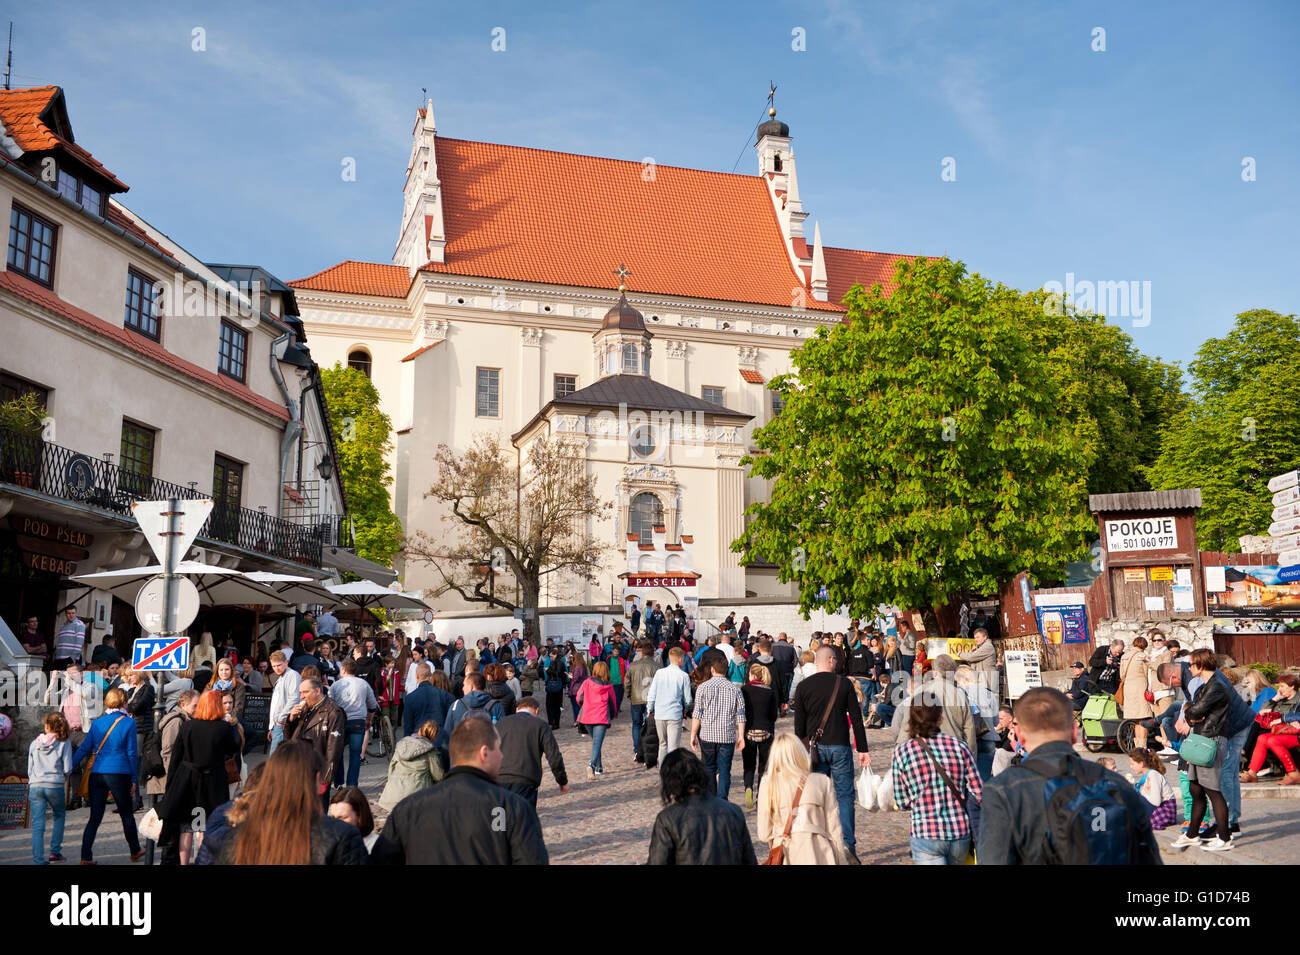 Pfarrkirche Ansicht vom Marktplatz in Kazimierz Dolny, Polen, Europa, malerische Gebäude Fassade der Pfarrkirche. Stockfoto